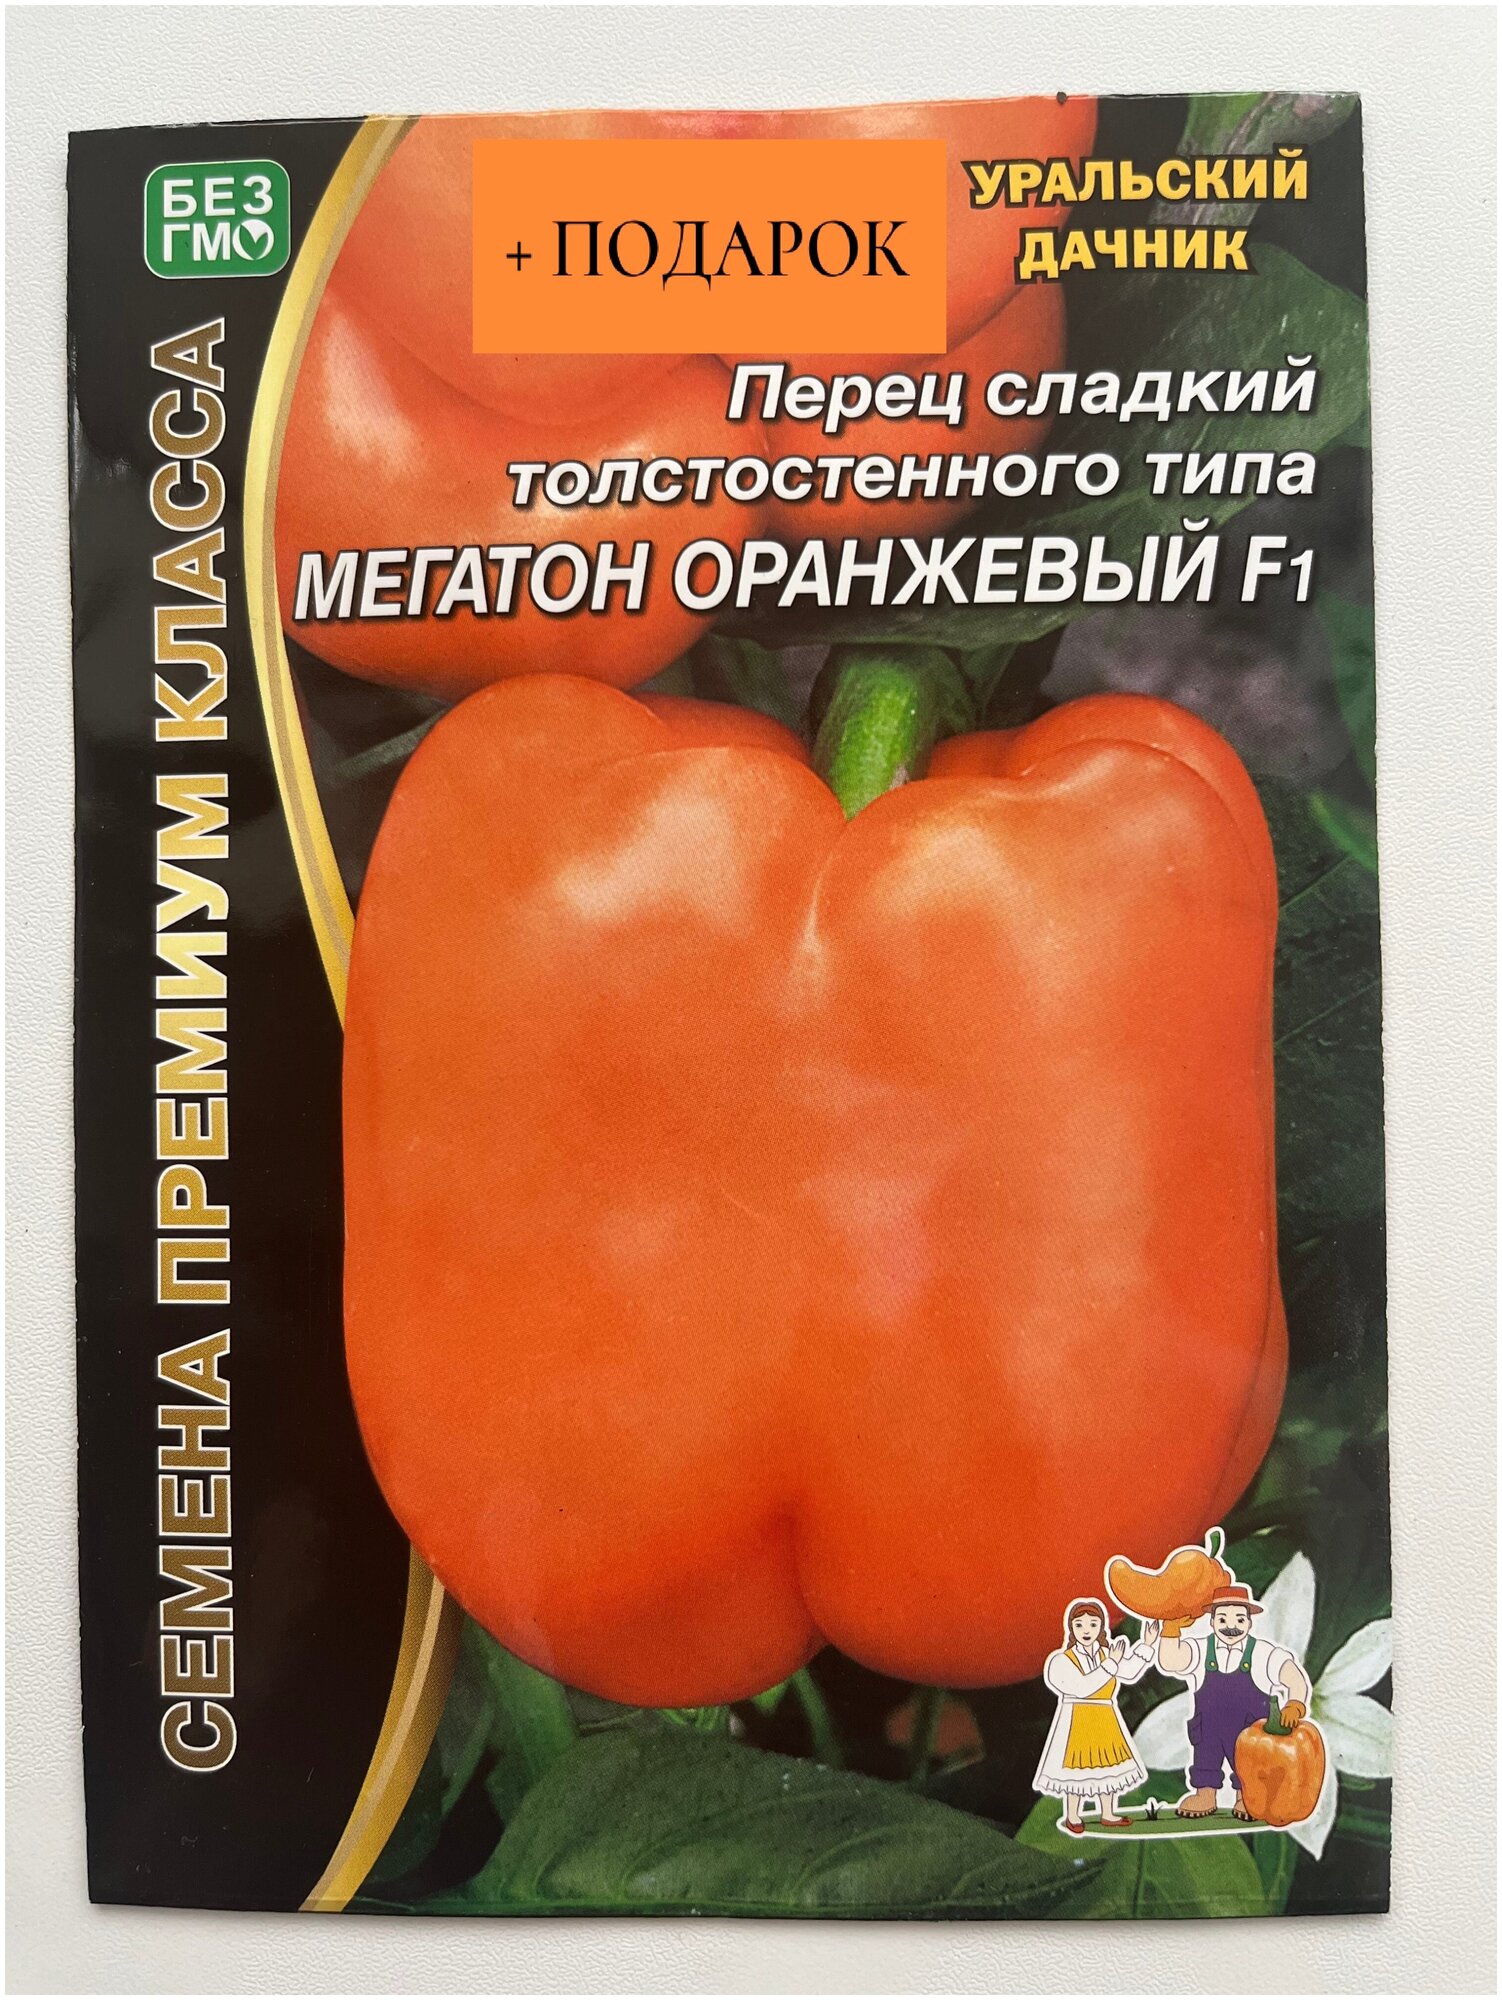 Семена Уральский дачник премиум перец сладкий Мегатон Оранжевый F1 12 